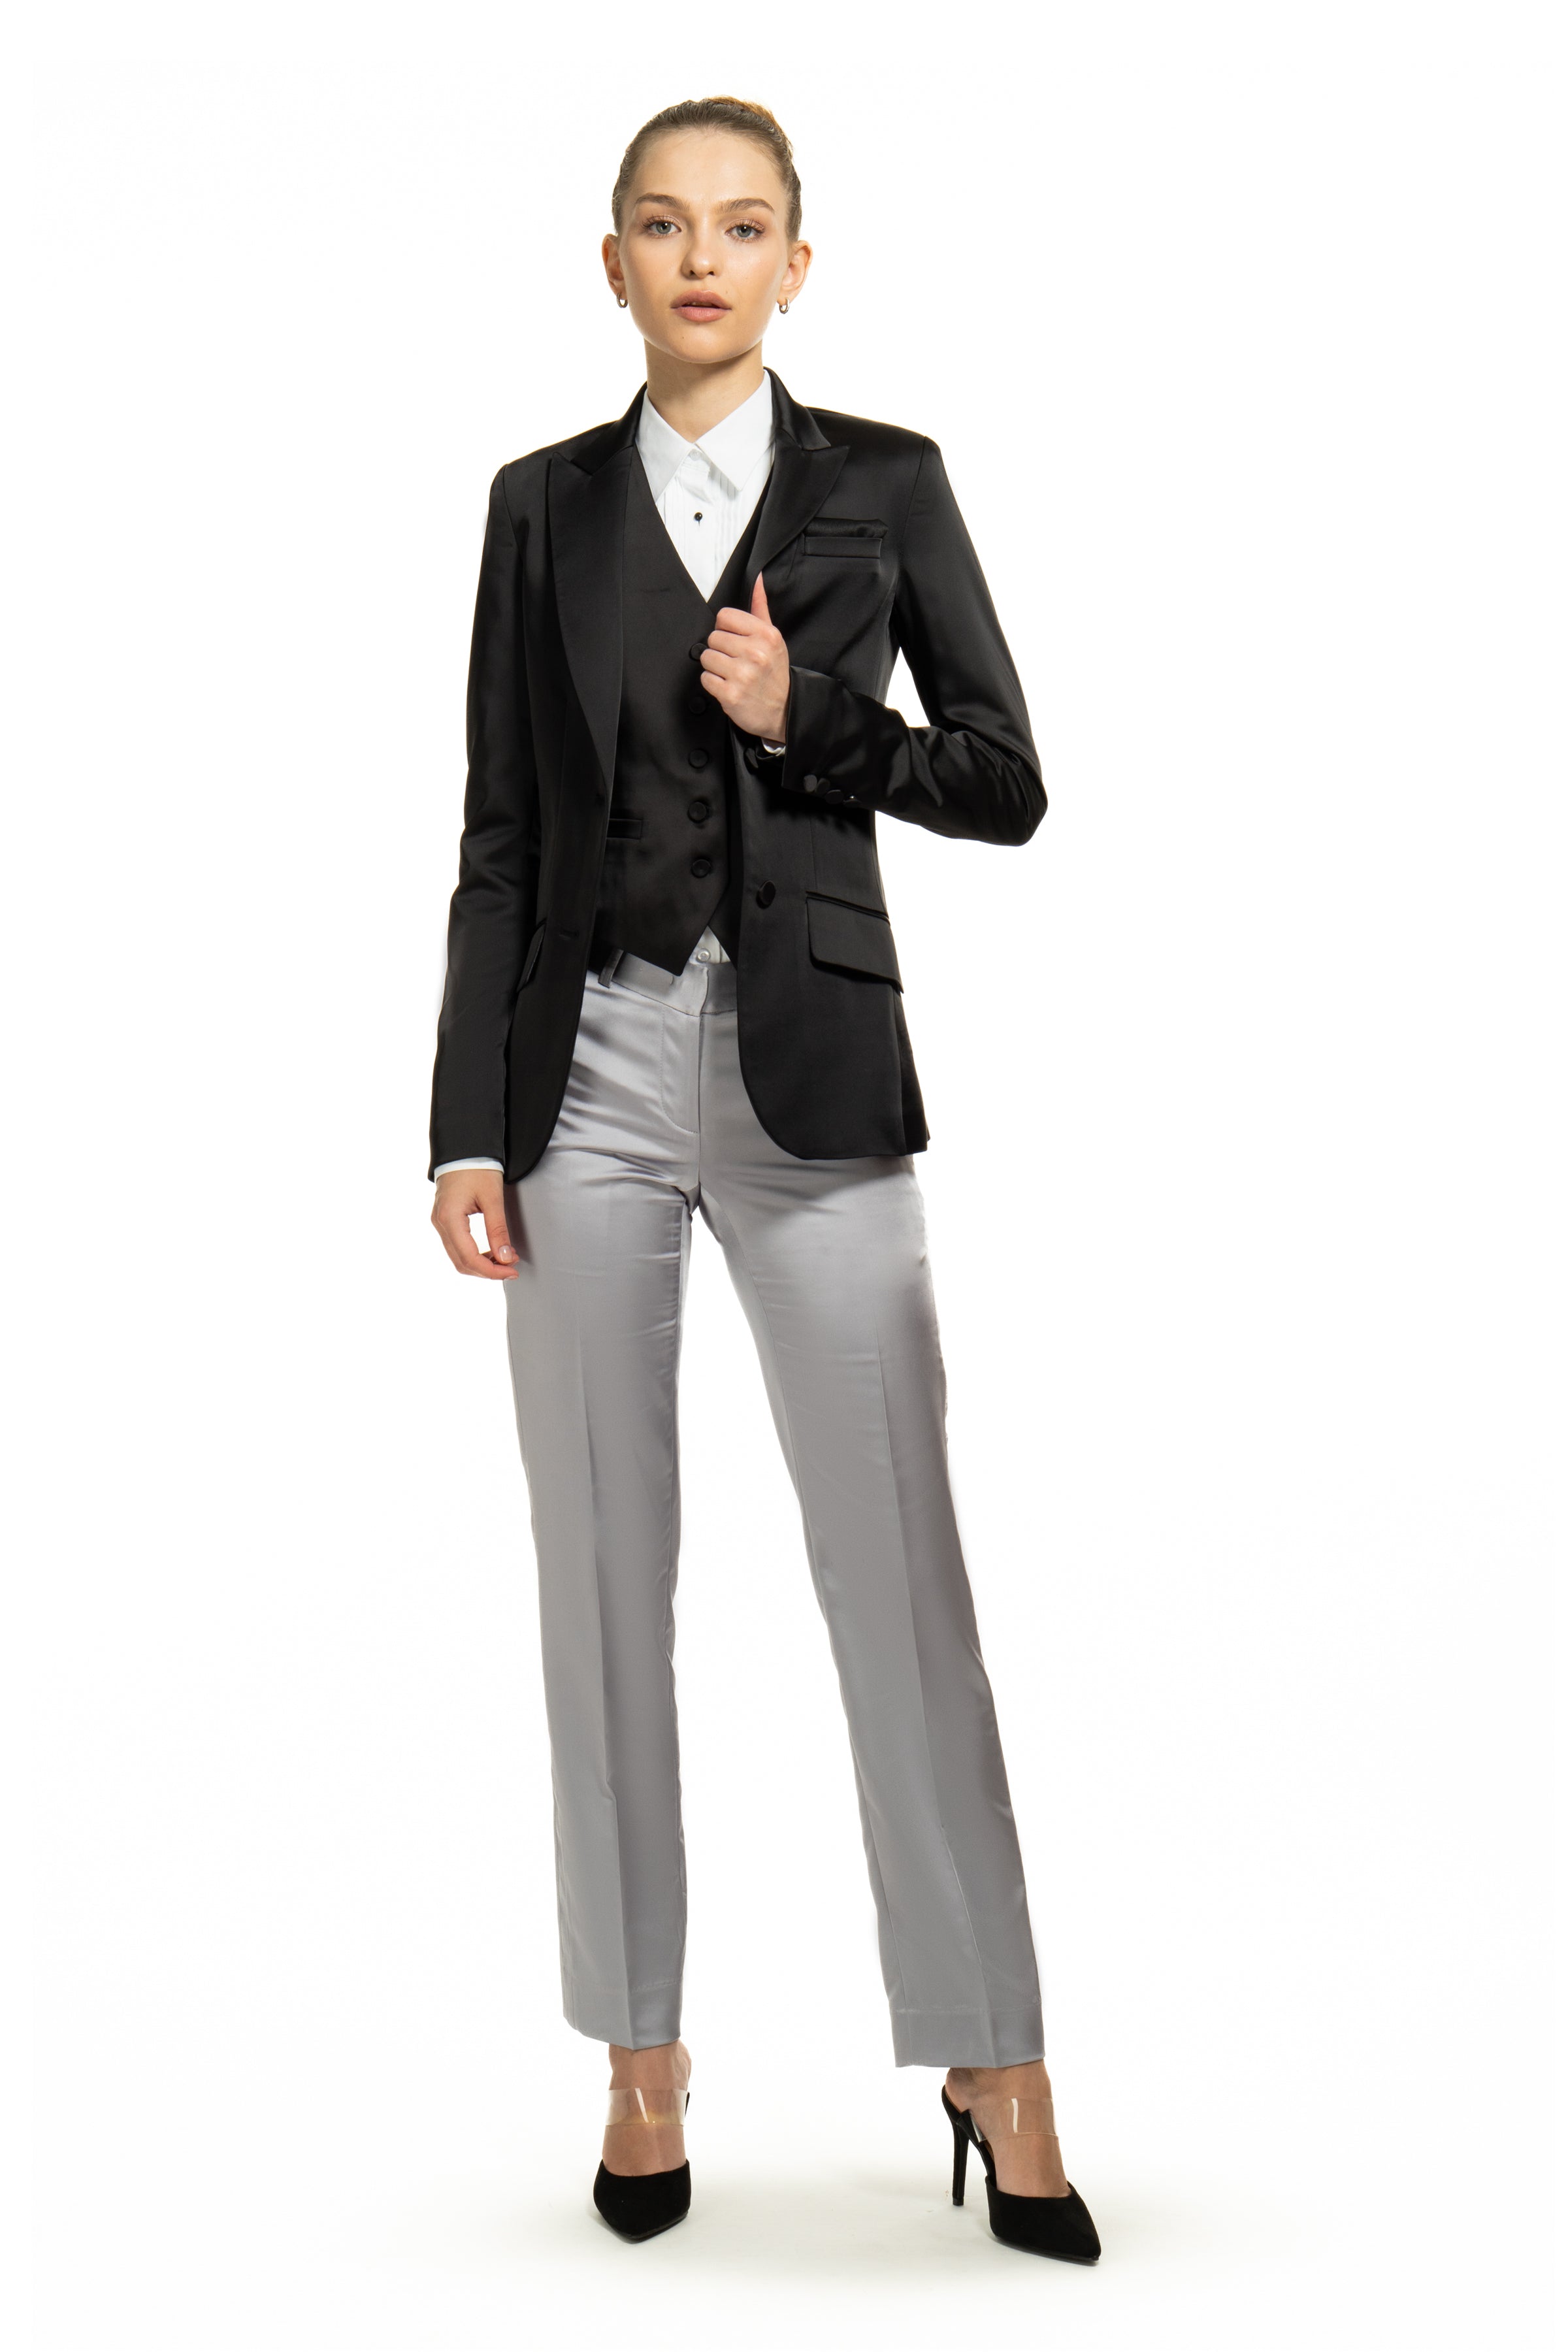 Women's Silver Gray Black Peak Tuxedo Jacket – LITTLE, 48% OFF